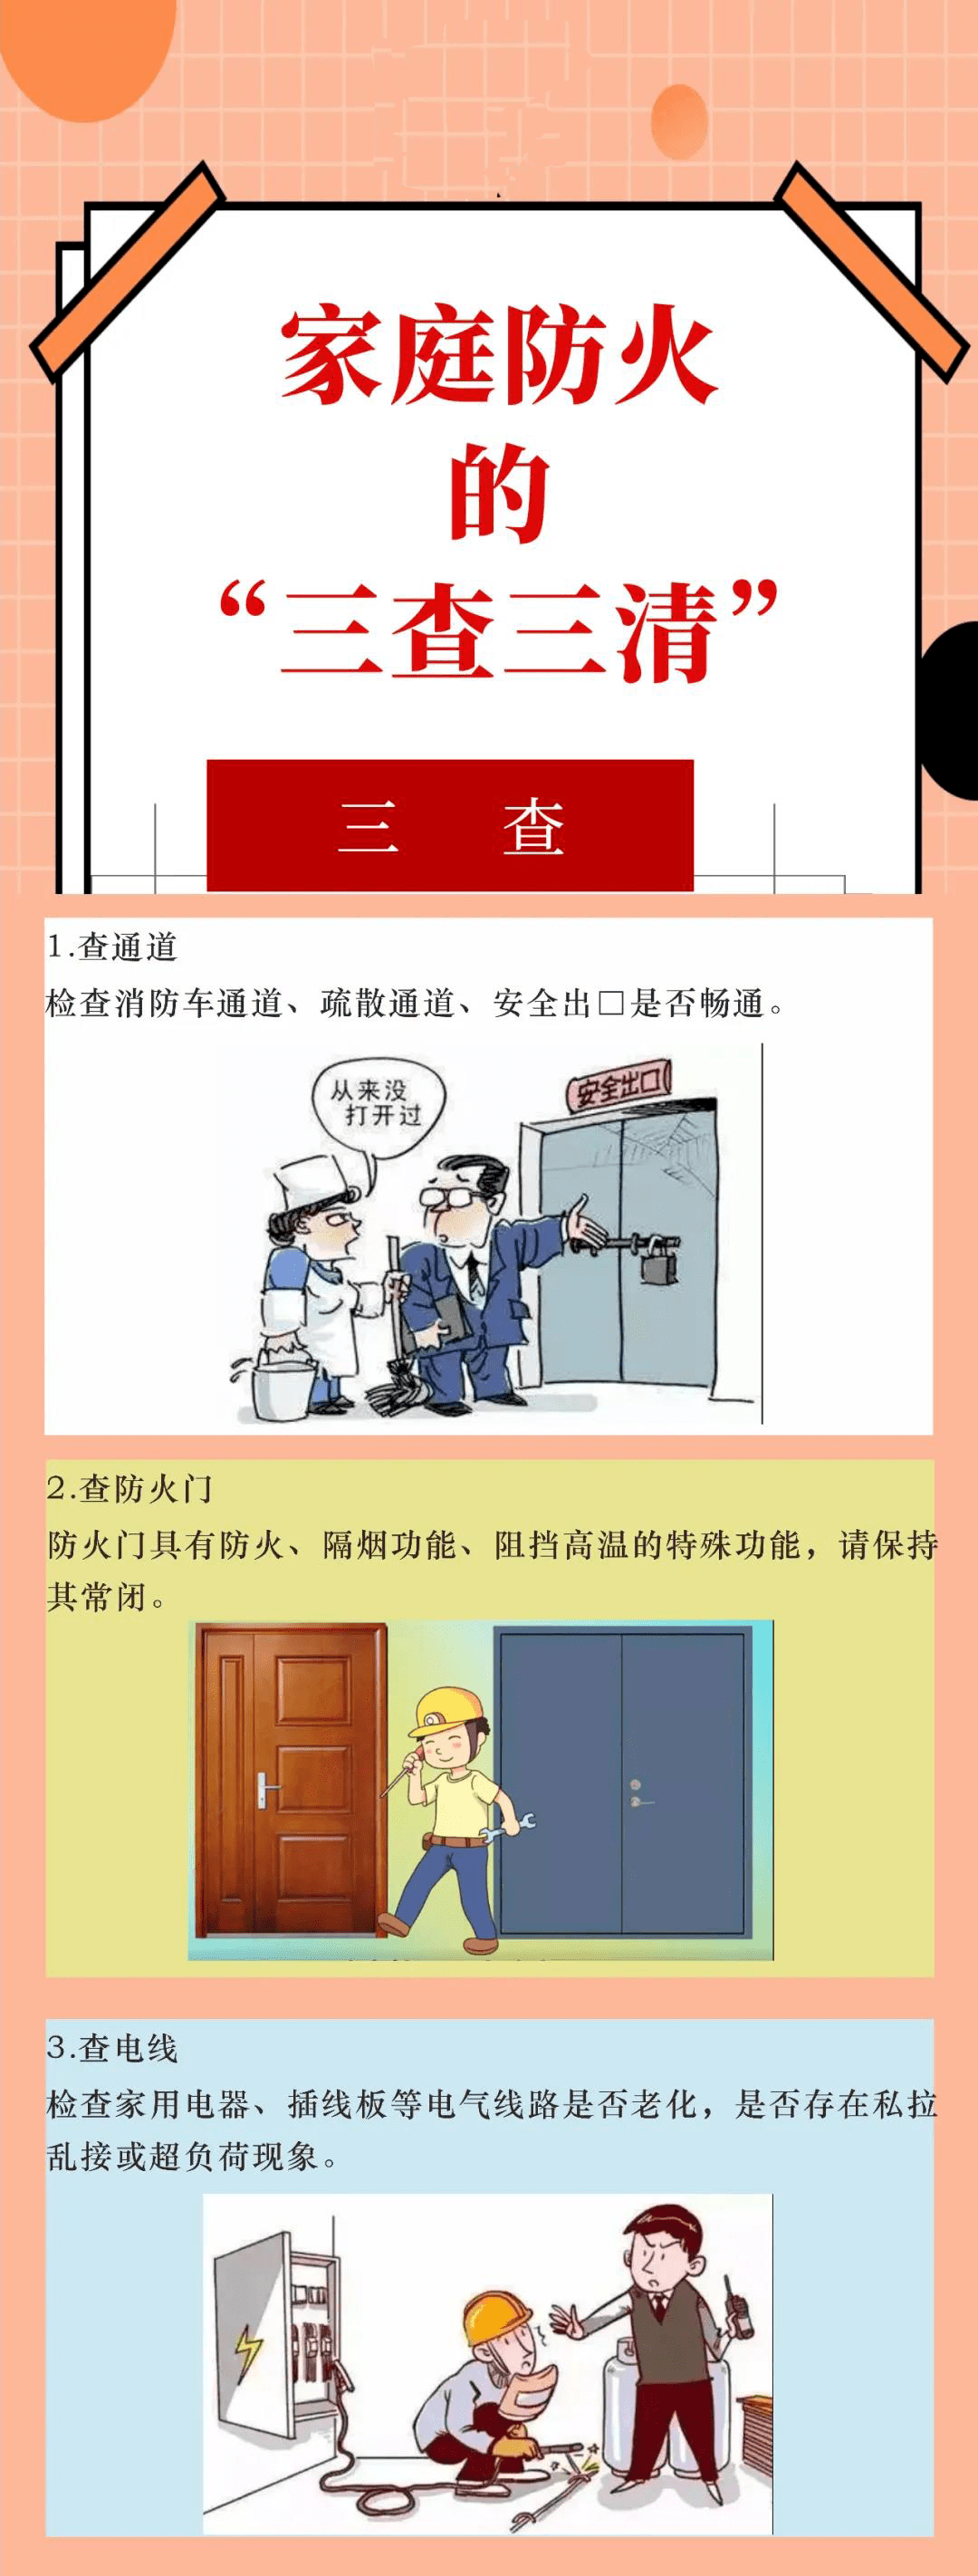 消防大队三清三关宣传图片